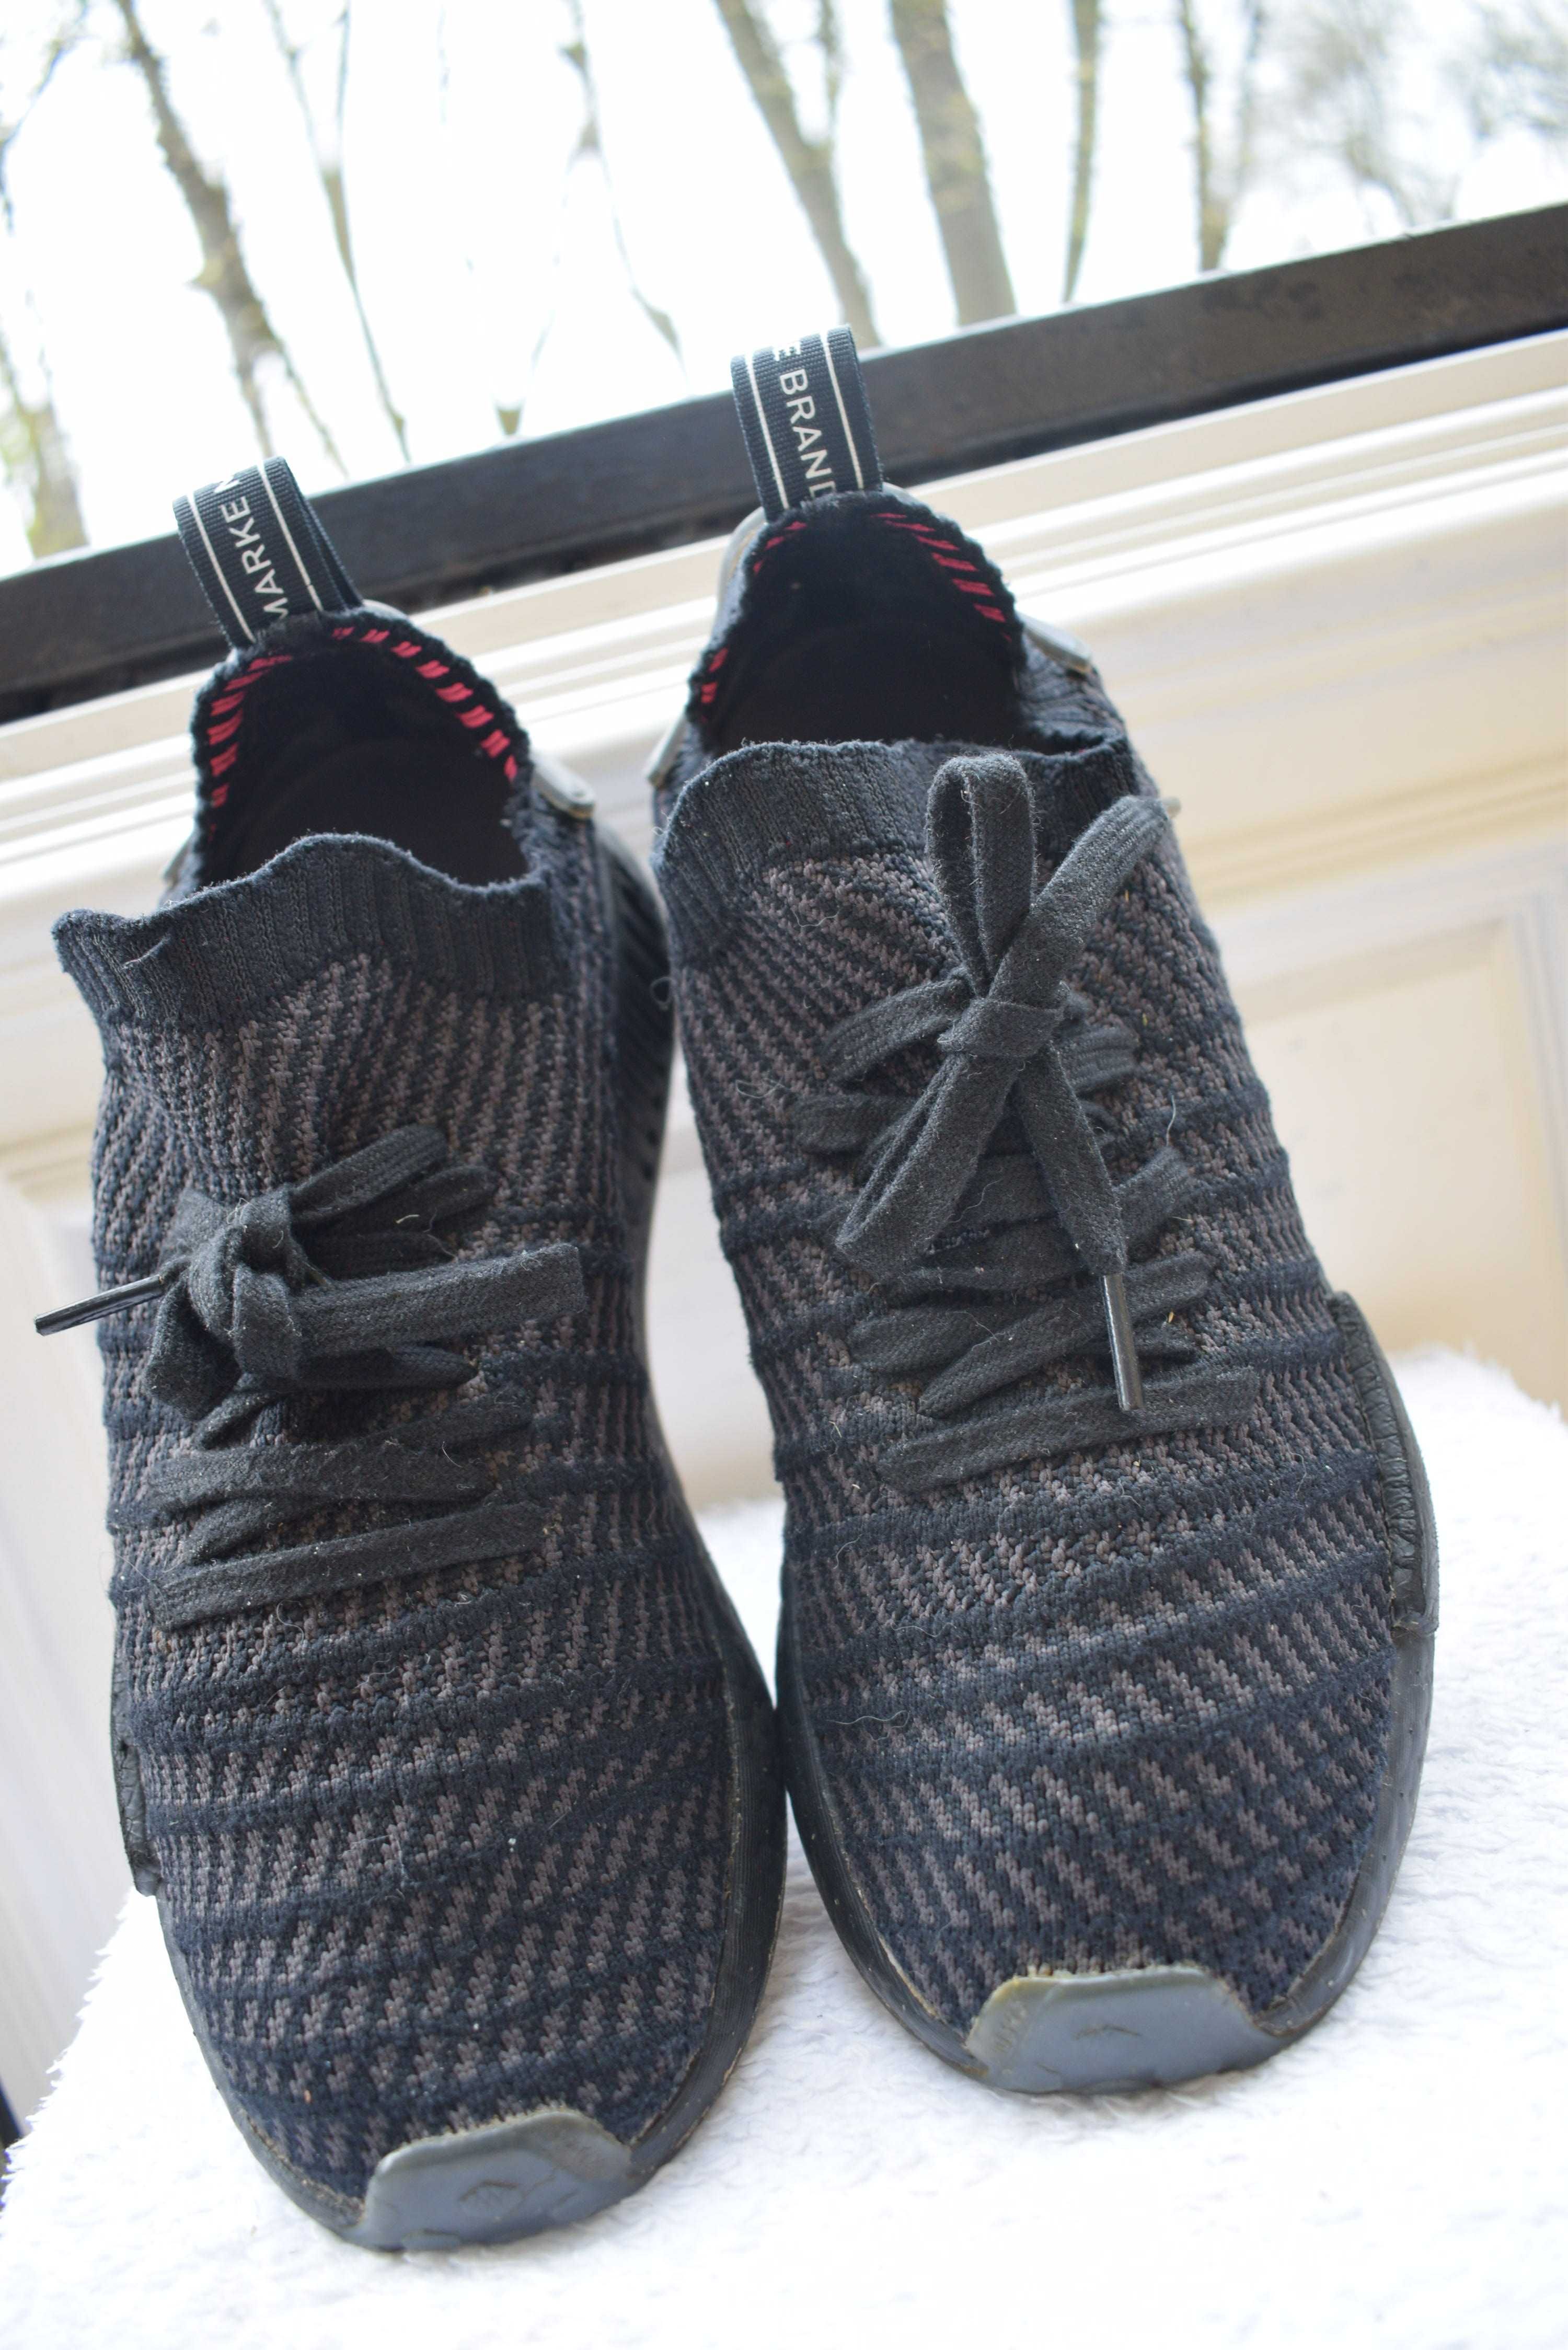 кроссовки кросовки кеды мокасины Adidas р. 42 26,5 см